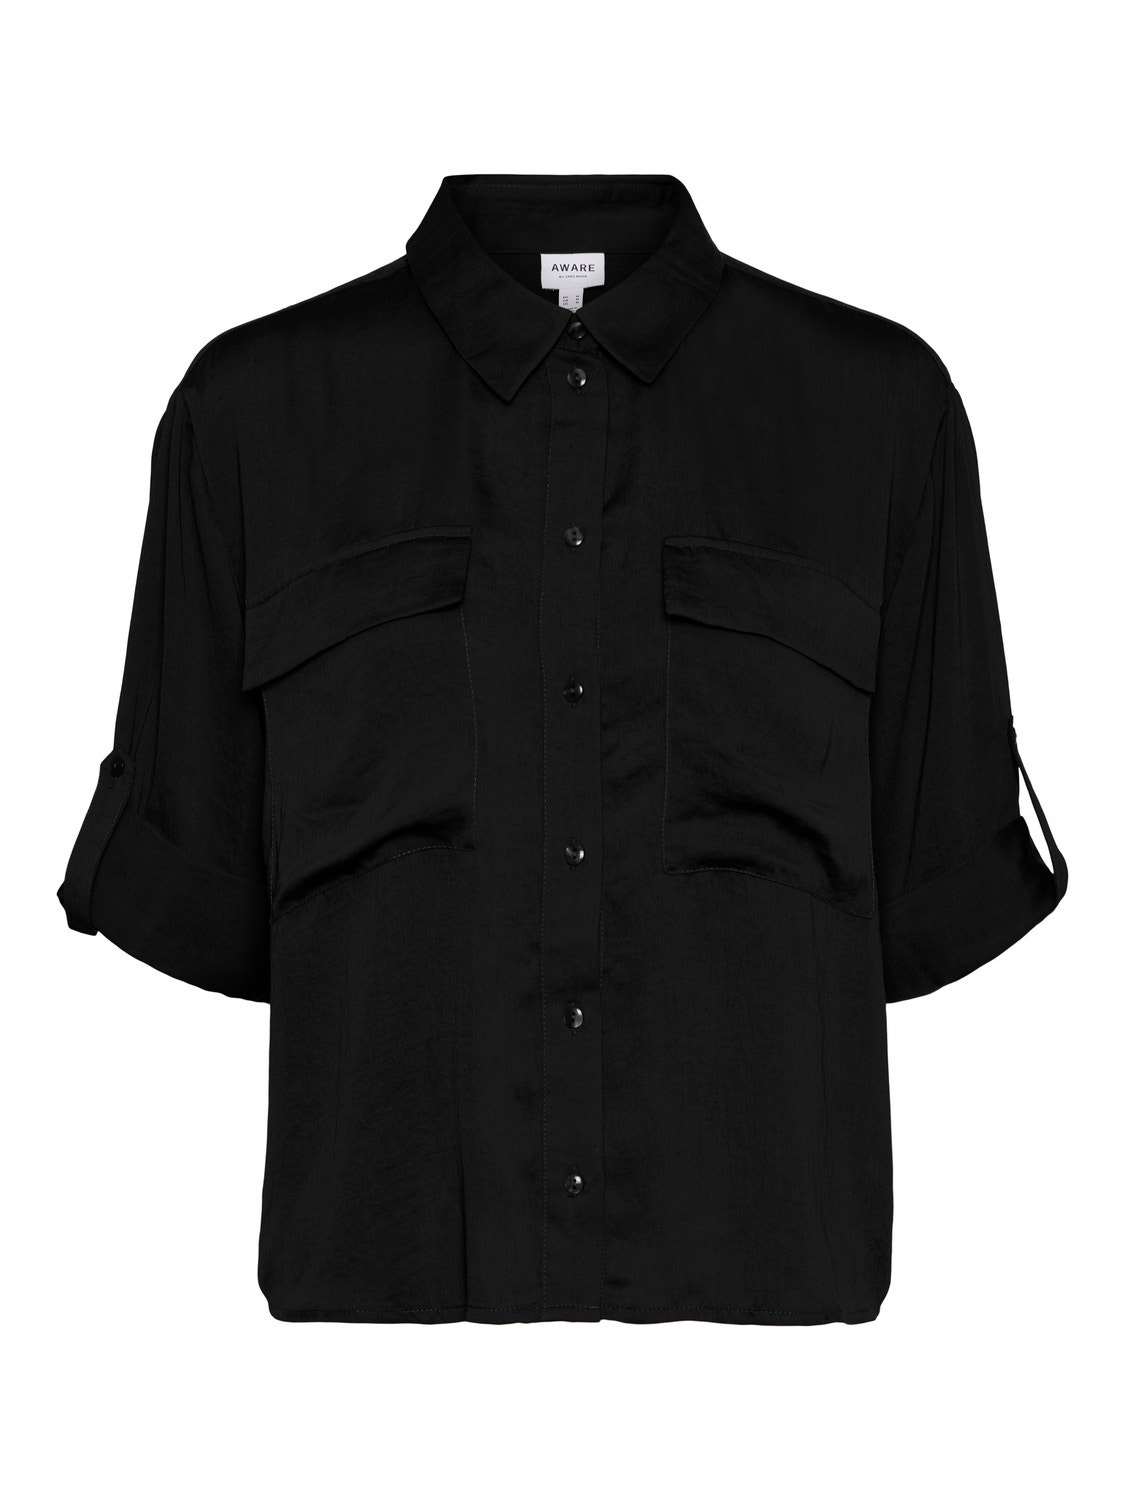 Vero Moda VMFABIANA Shirt -Black - 10292861